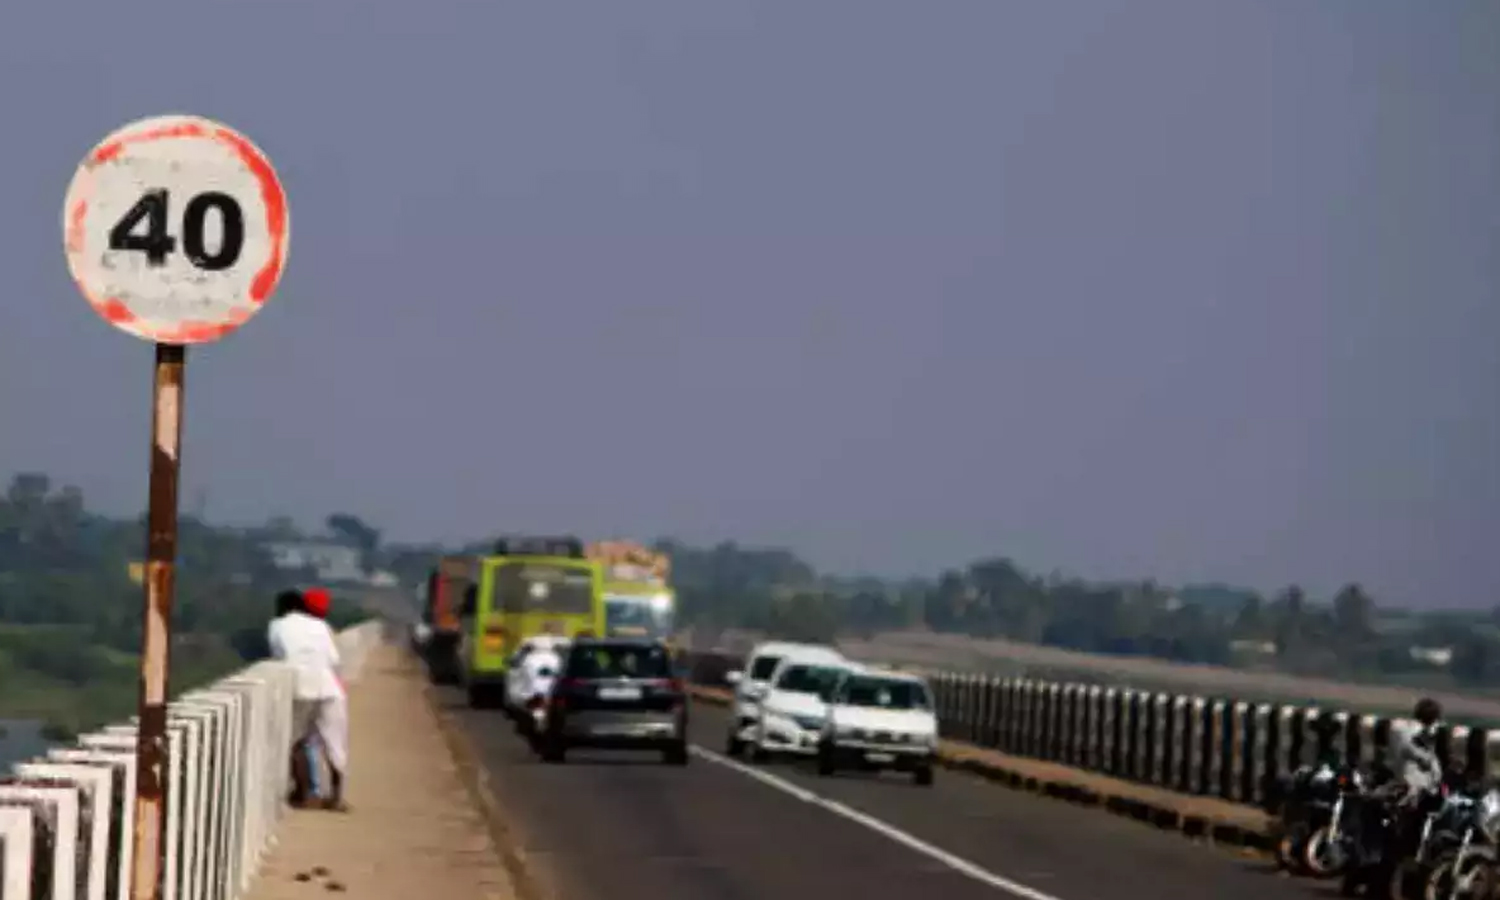 வாகனங்களுக்கு வேக வரம்பு நிர்ணயம்- சென்னை பெருநகர காவல்துறை | Chennai  Metropolitan Police Fixed speed limit for vehicles